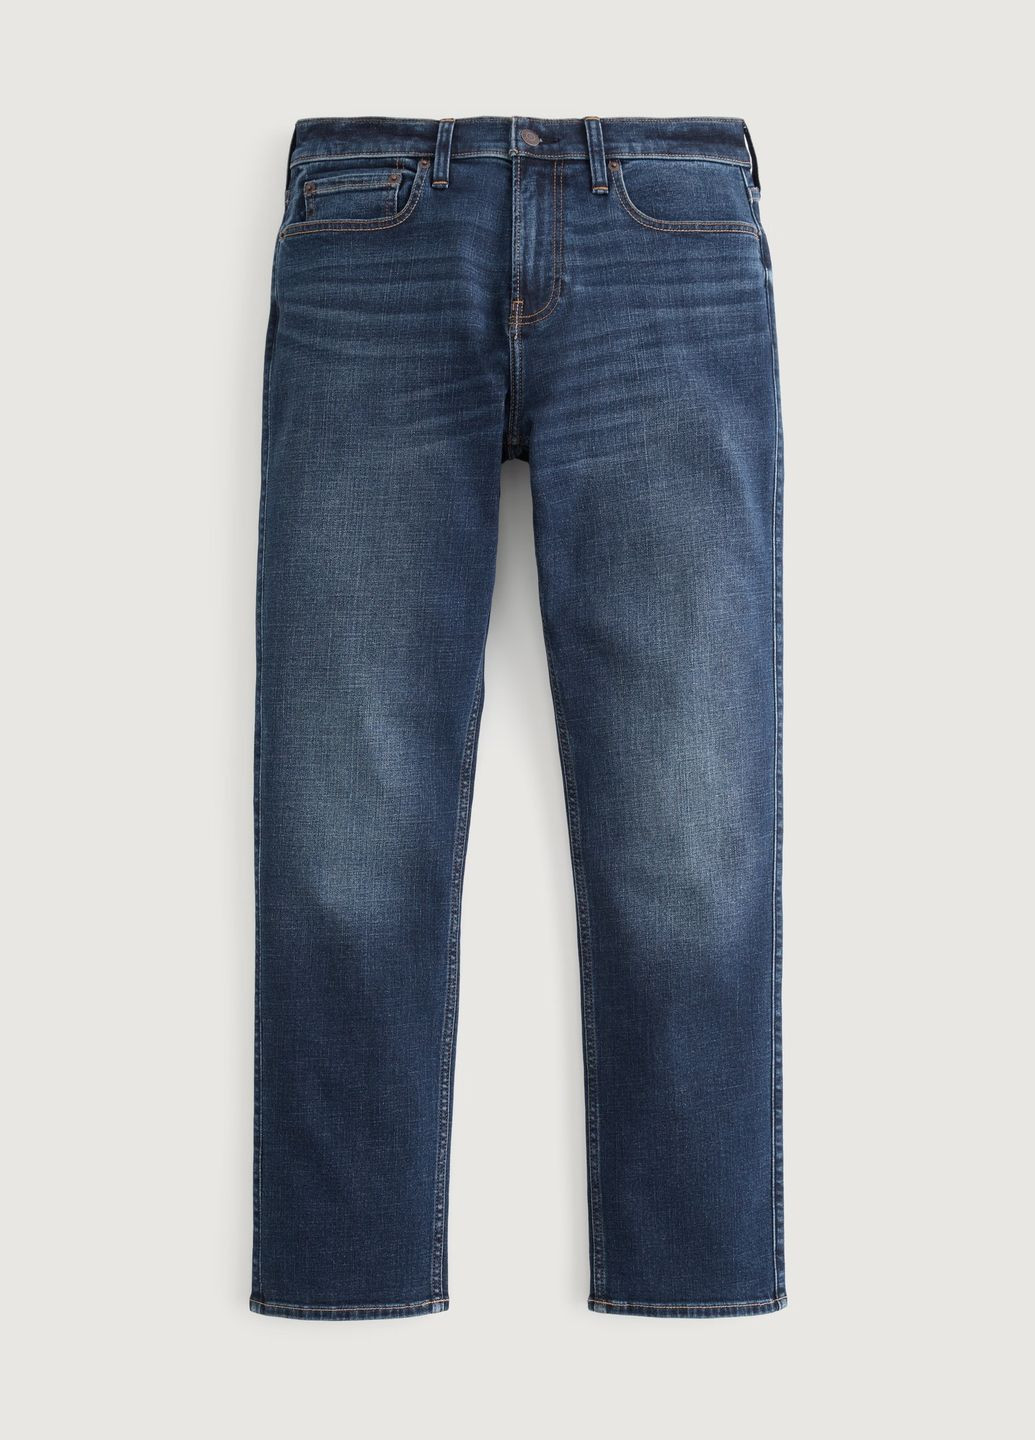 Синие демисезонные джинсы slim straight hc9833m Hollister